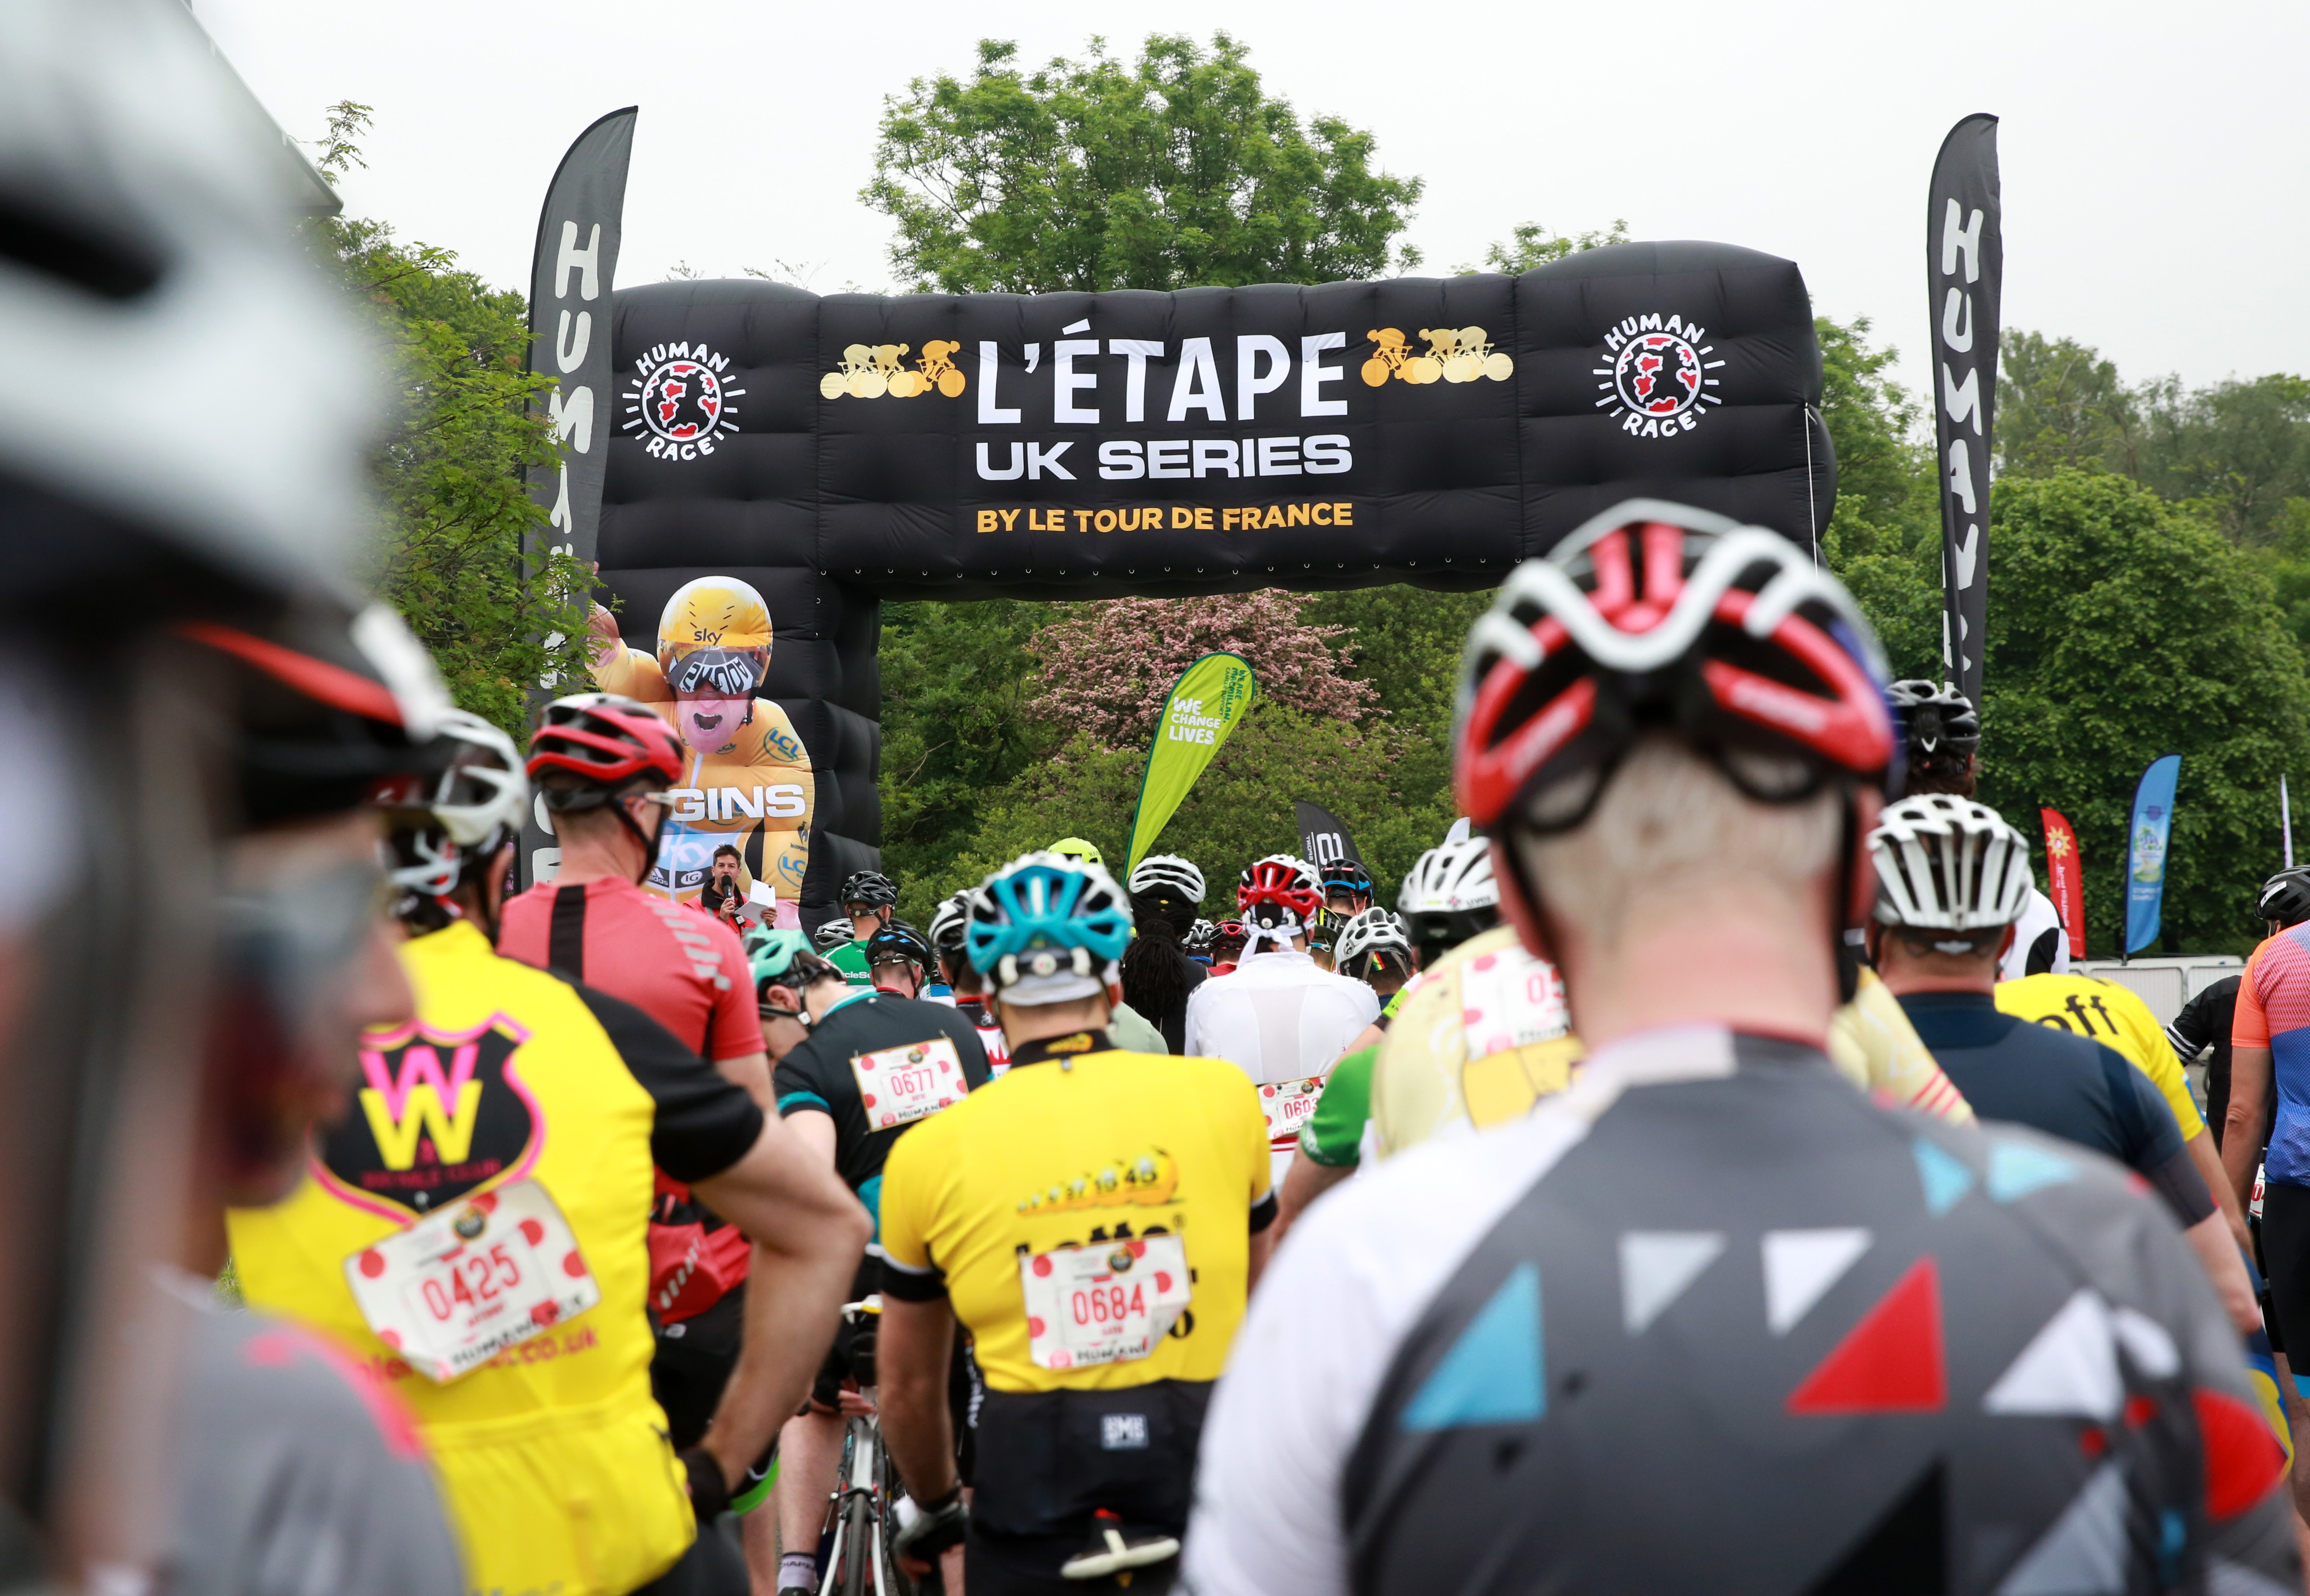 Dragon Ride L’Etape Wales by Le Tour de France is a “real Tour